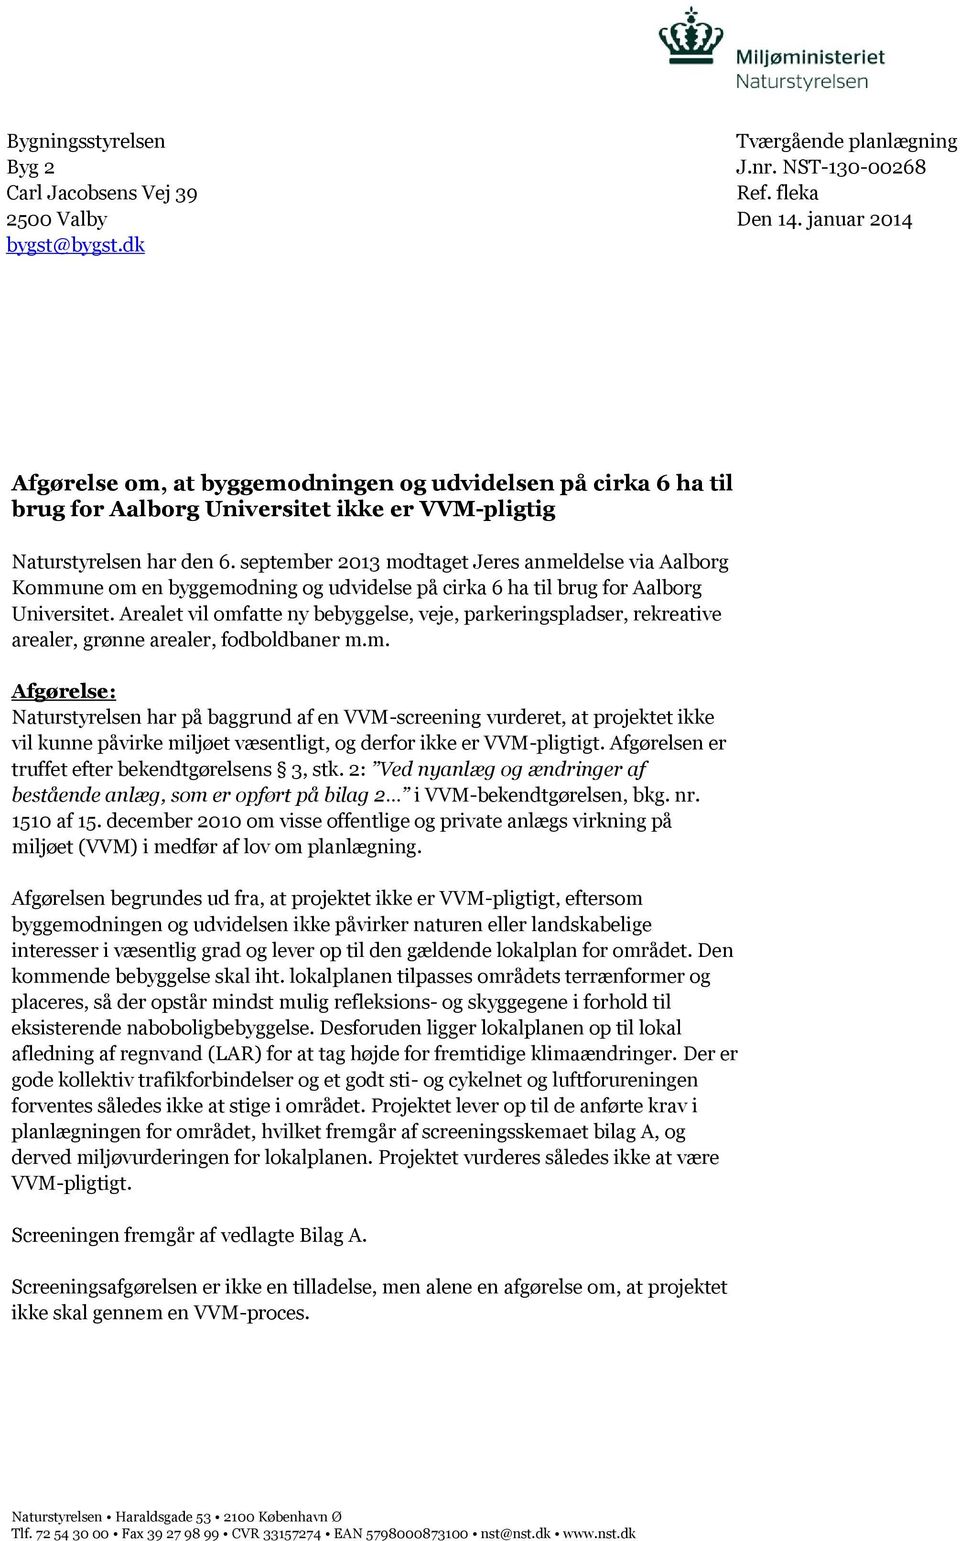 september 2013 modtaget Jeres anmeldelse via Aalborg Kommune om en byggemodning og udvidelse på cirka 6 ha til brug for Aalborg Universitet.